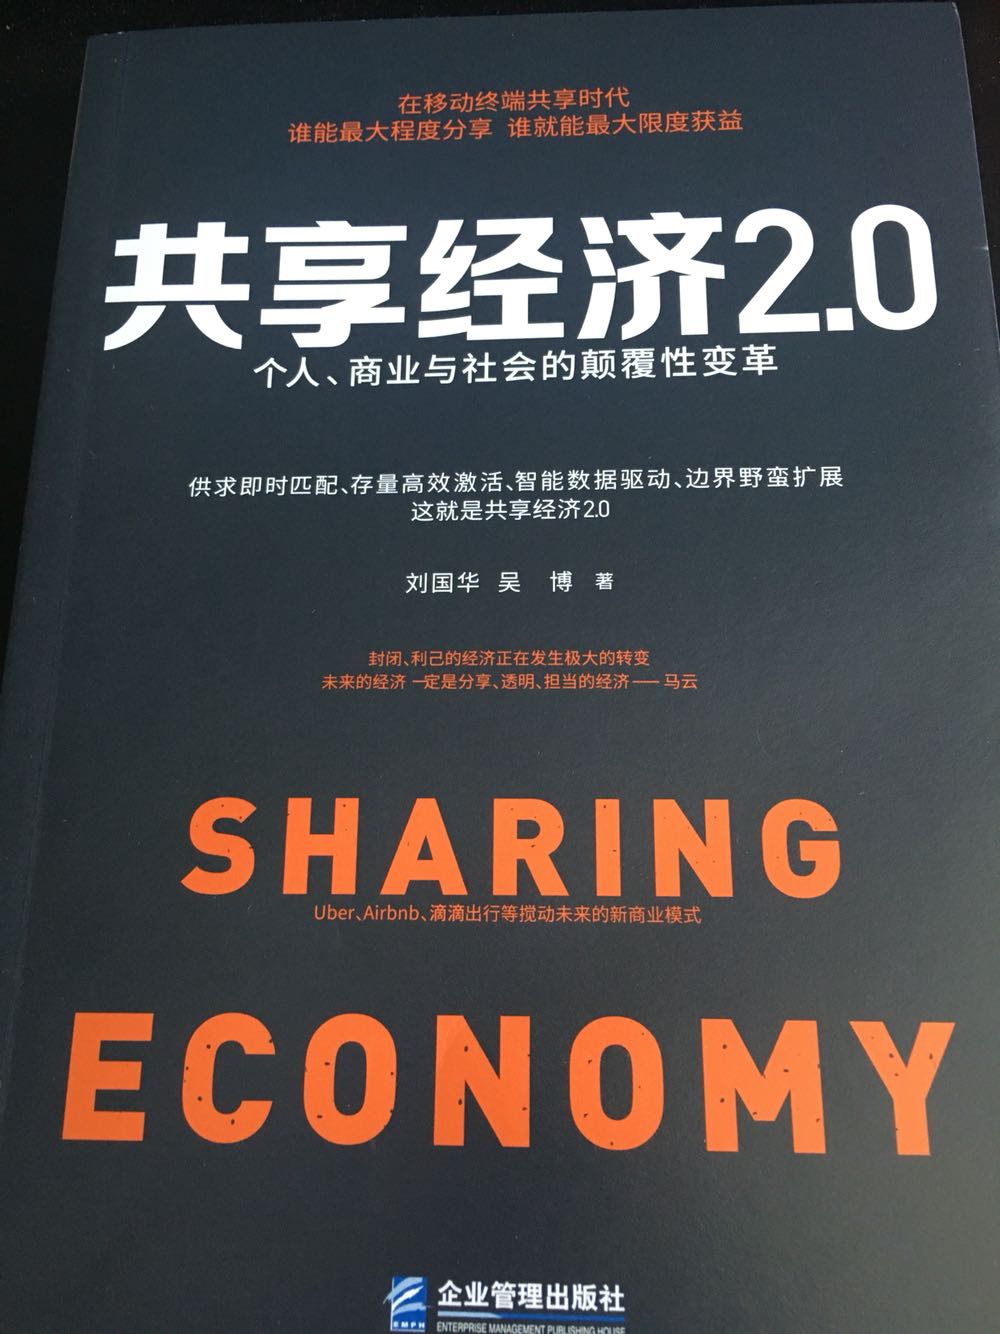 书当然不用多少啦，通过对话节目了解这本书，明白了各位共享经济，很清晰的介绍了共享经济形势下的发展趋势，让天下没有难做的生意咯！不错不错！